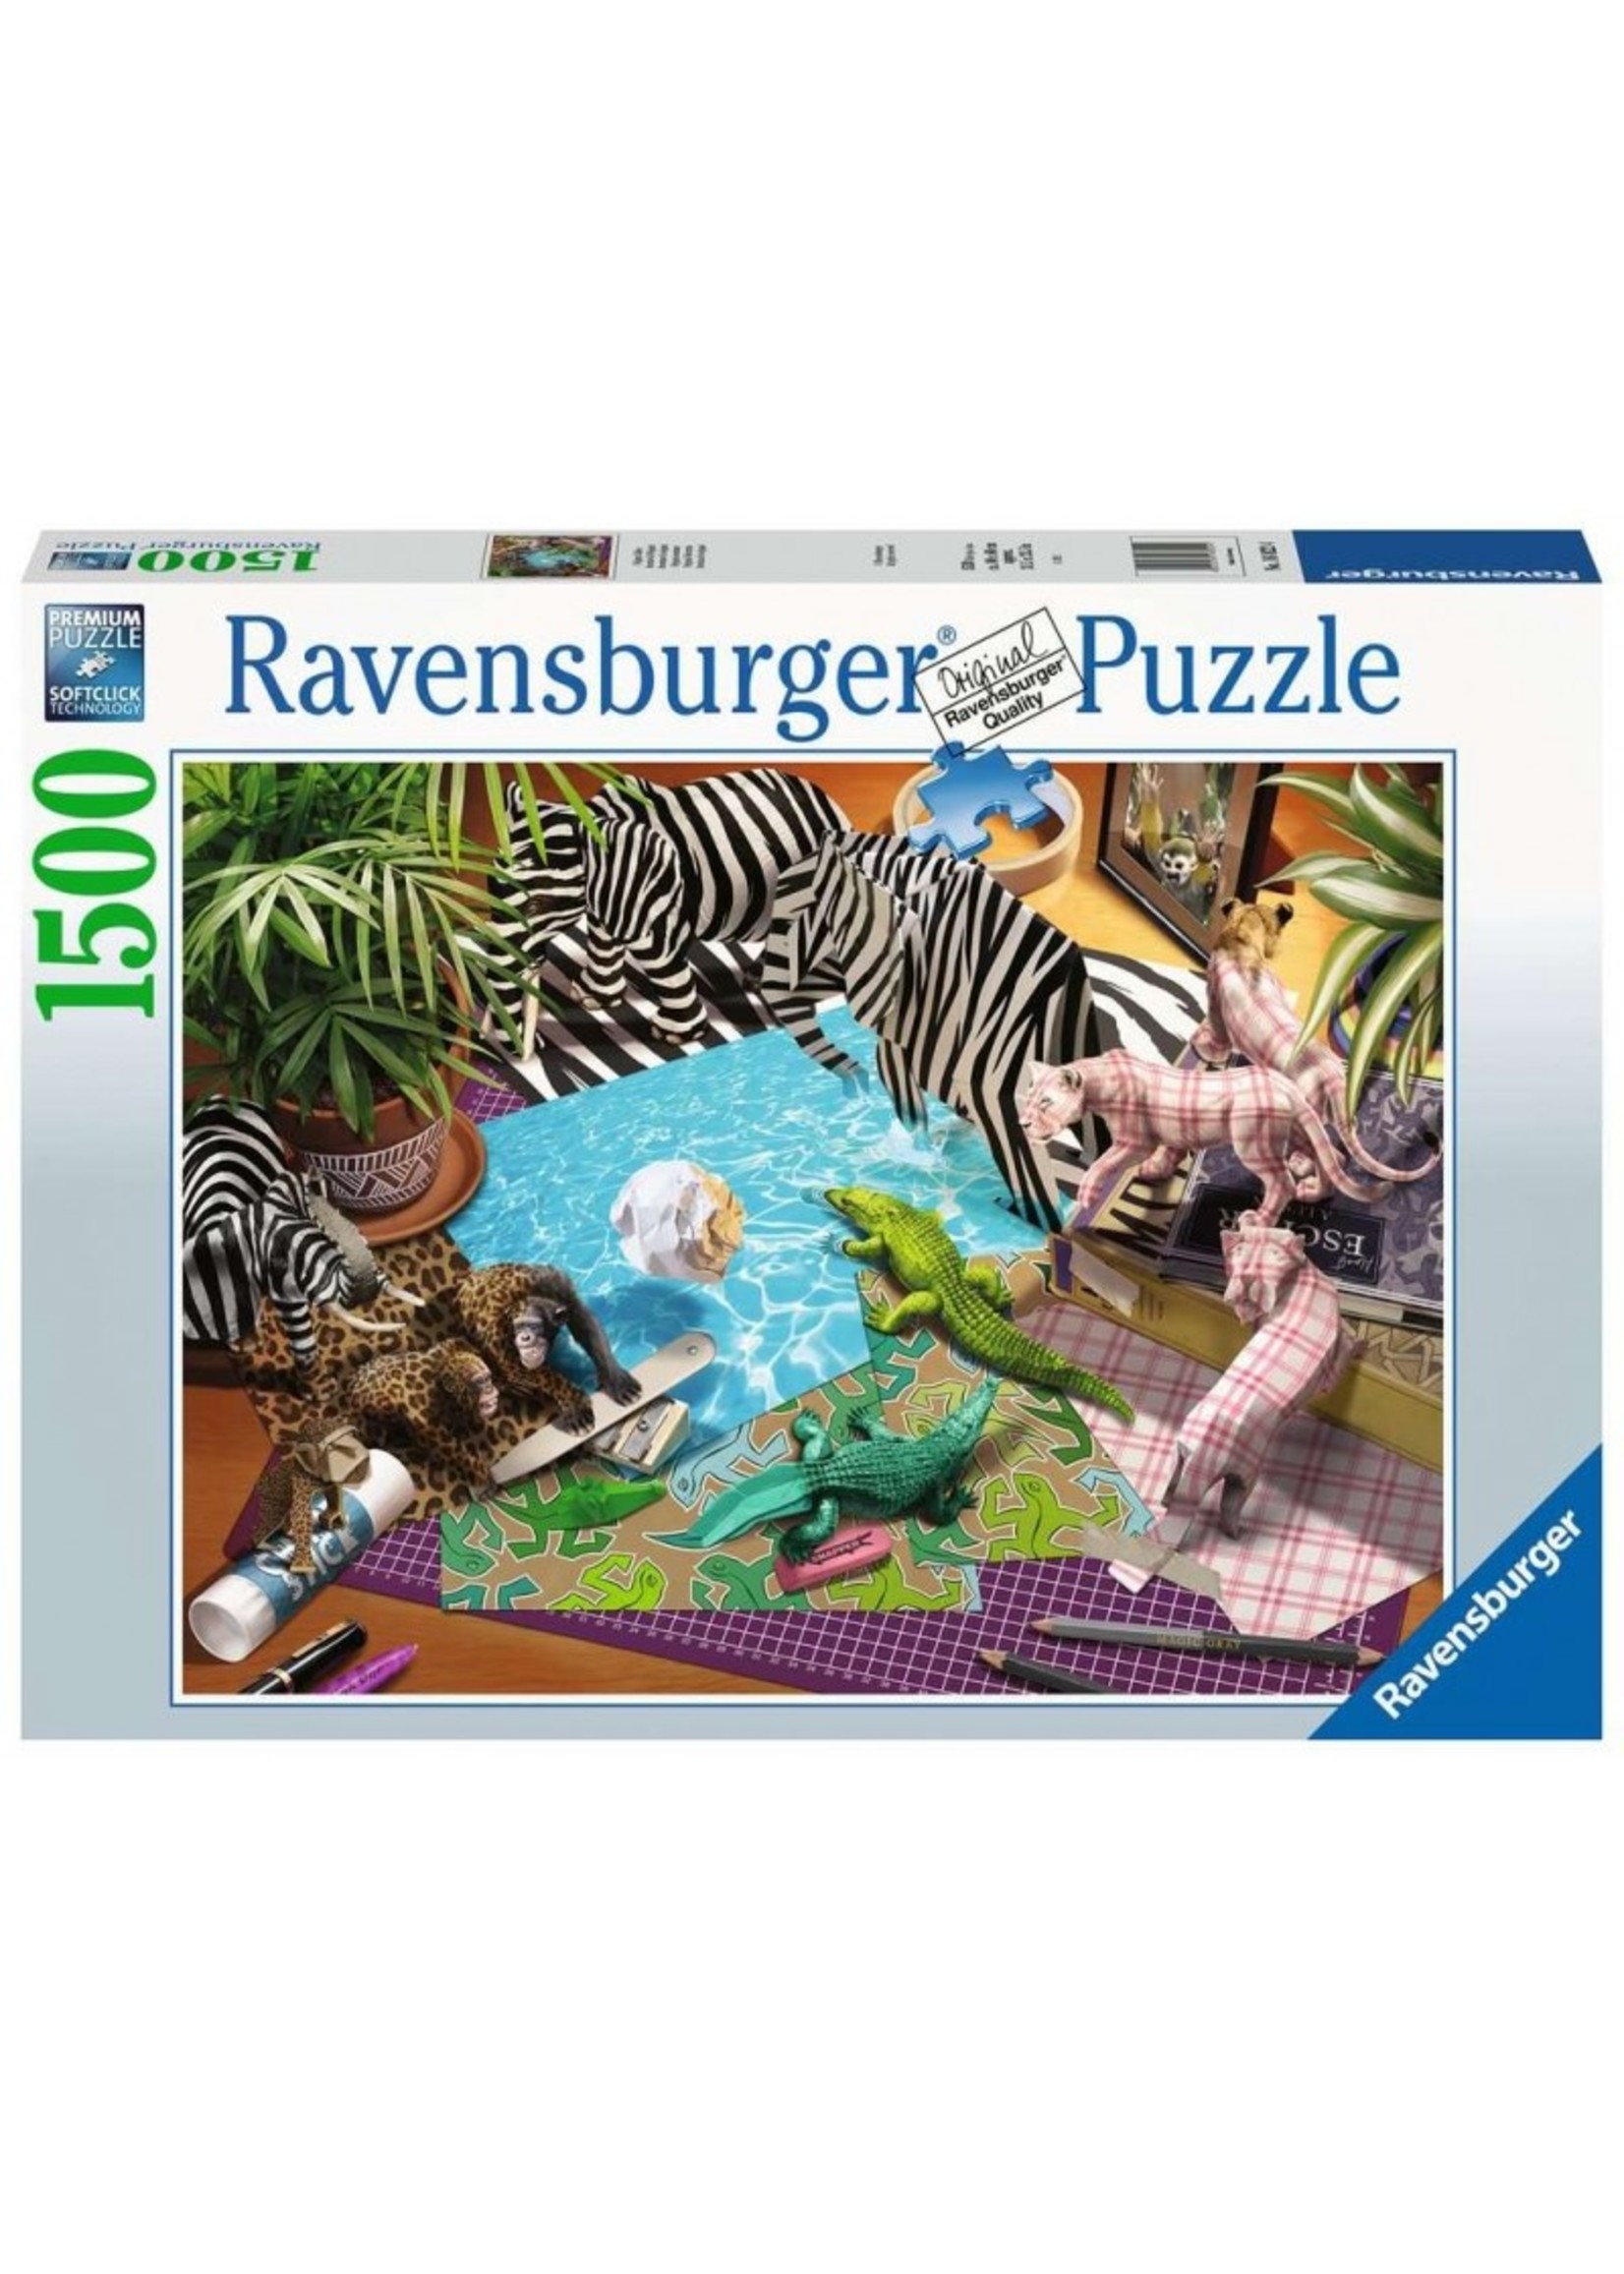 Ravensburger Origami Adventure - 1500 Piece Puzzle